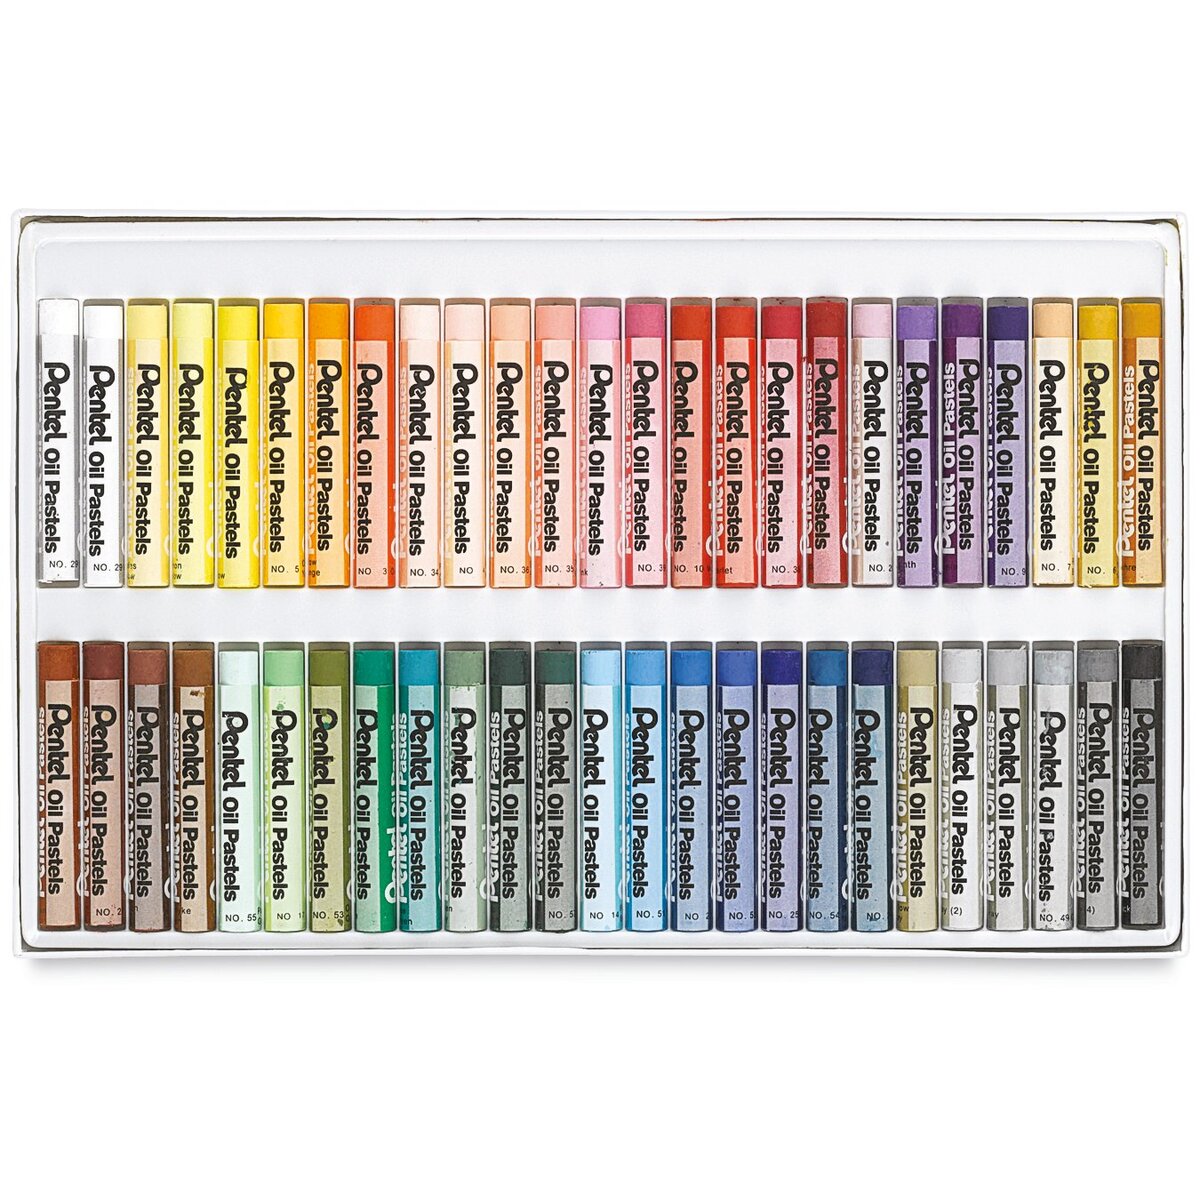 Pentel Arts® 50 Color Oil Pastels Set